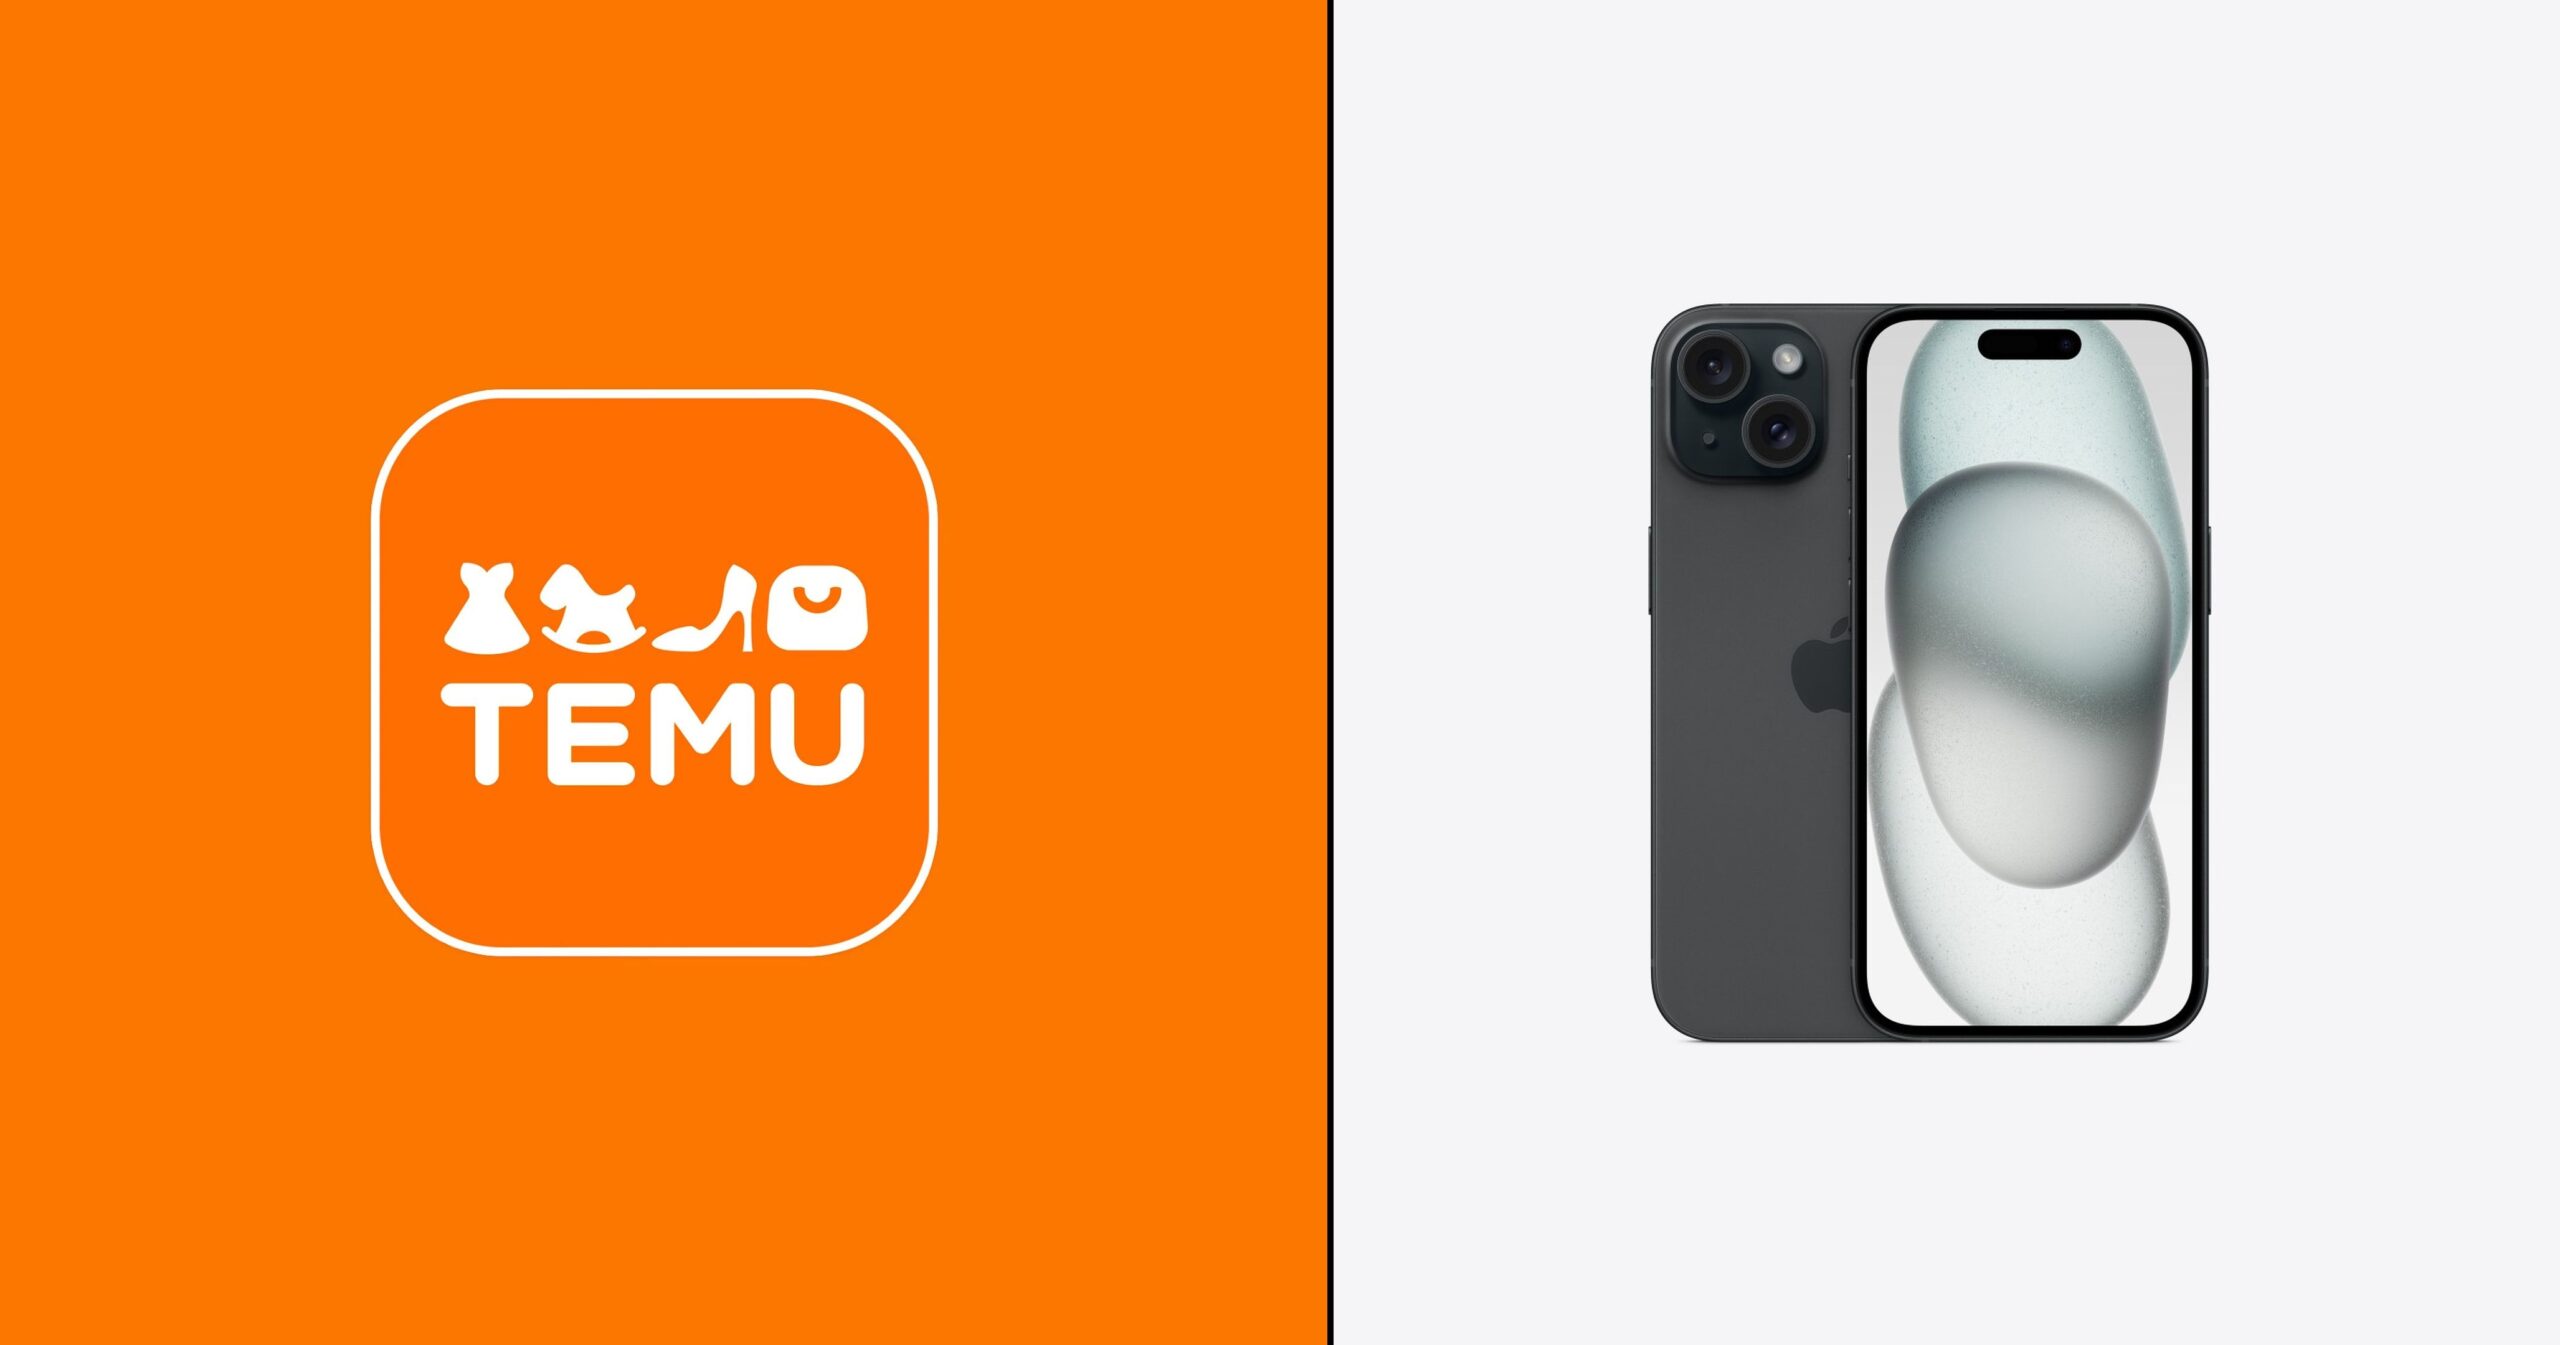 Dwa obiekty umieszczone na podzielonym tle, z lewej strony pomarańczowe tło z białym logiem aplikacji Temu, a z prawej strony zdjęcie czarnego smartfona z aparatami i przednim ekranem na białym tle.